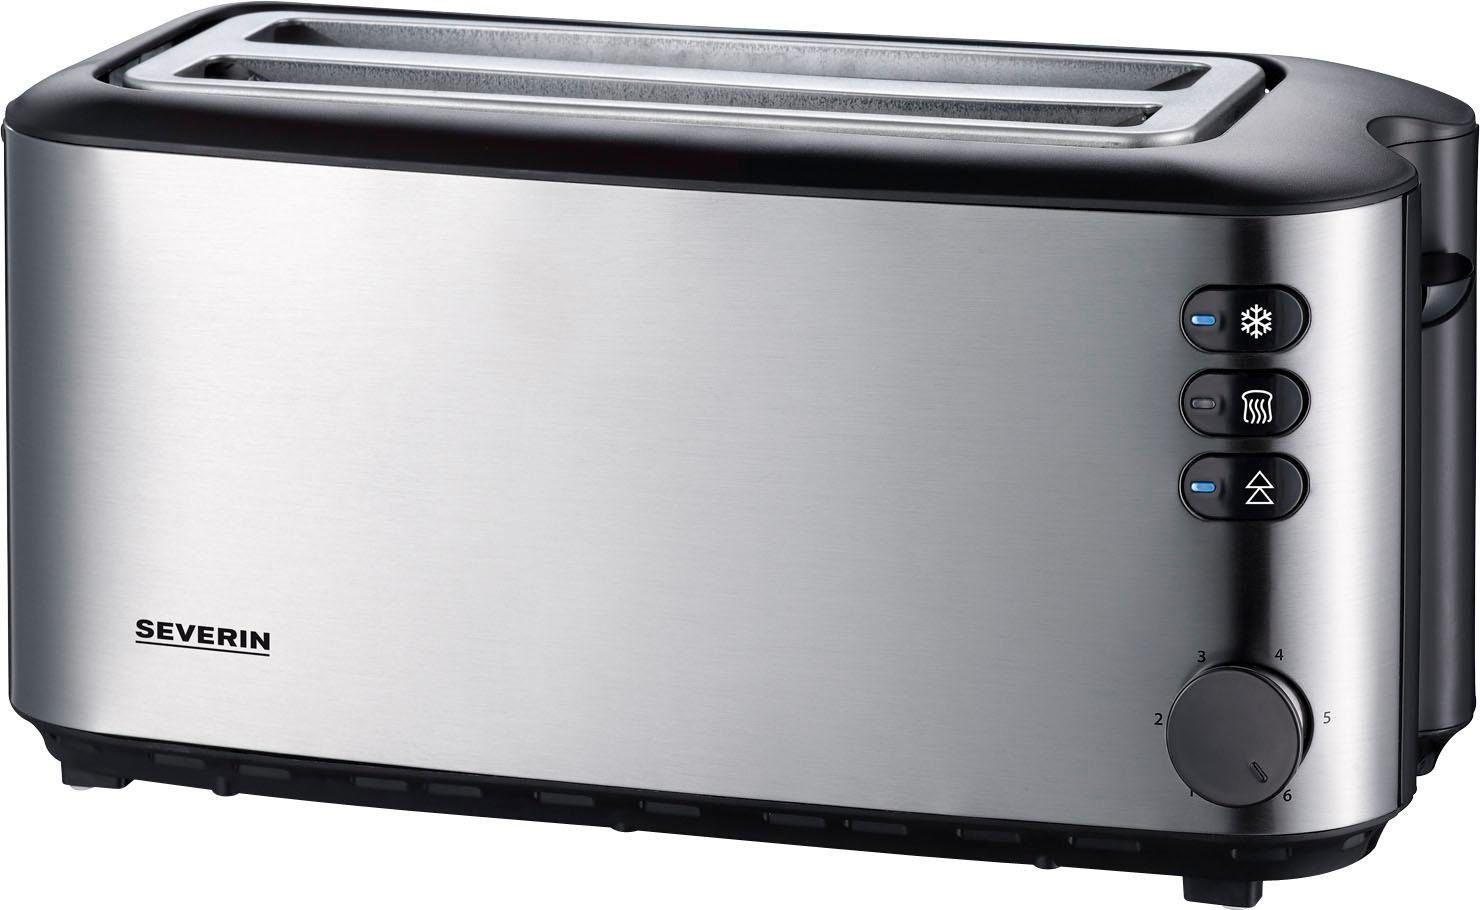 Severin Toaster AT 2509, lange Edelstahl-Gehäuse, Schlitze, 1400 W, wärmeisolierend Brötchenaufsatz + 2 doppelwandiges